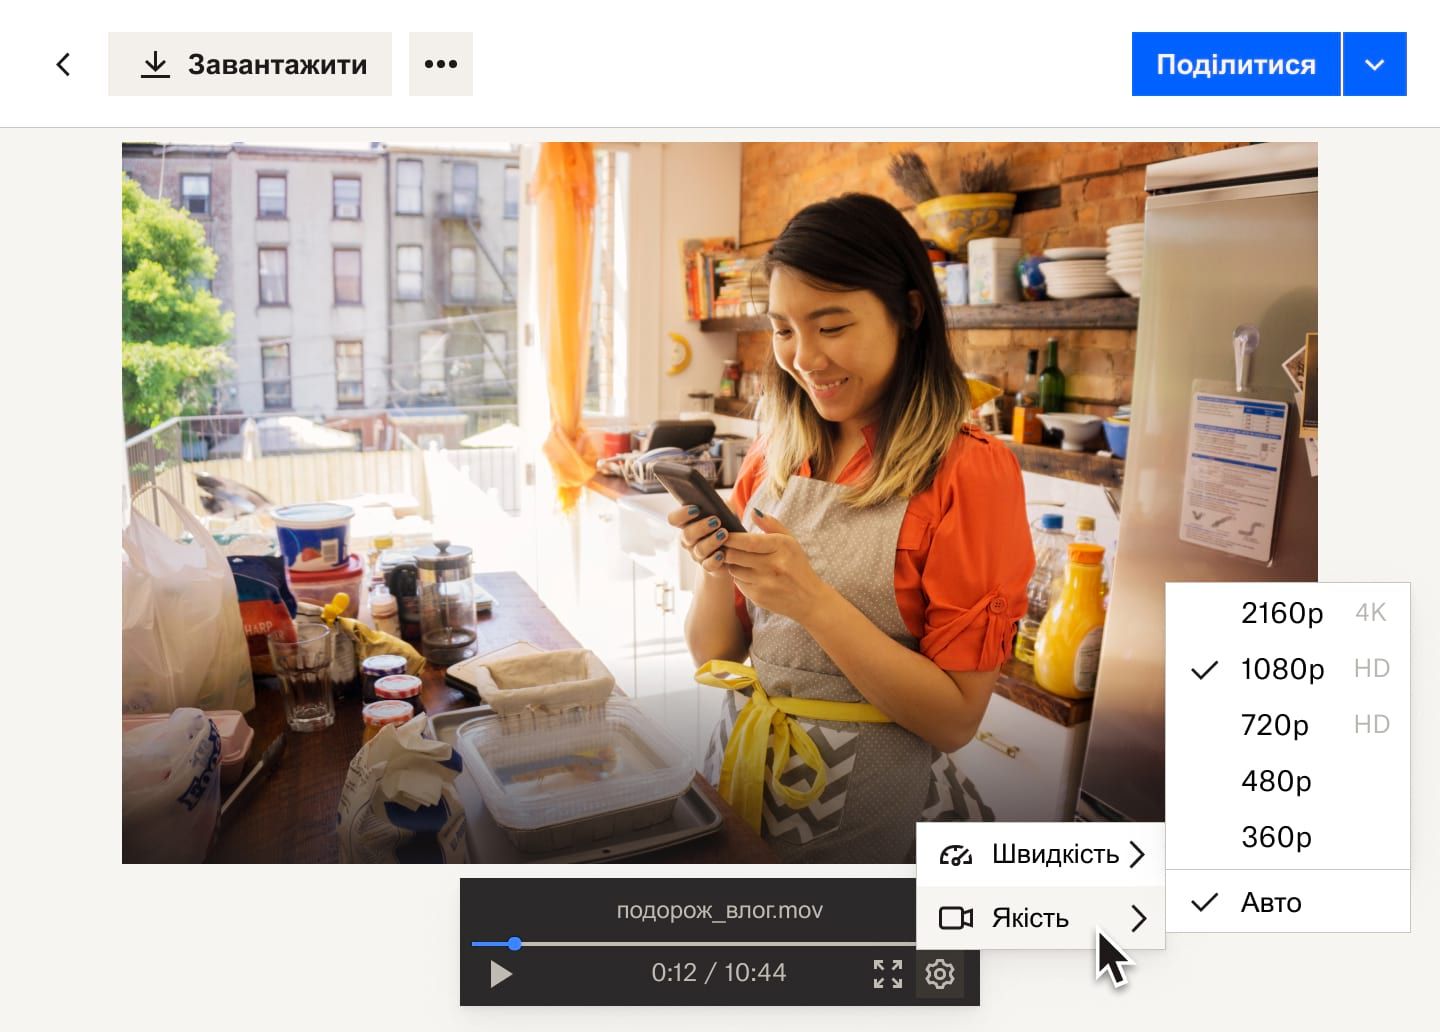 У меню кнопки параметрів показано варіанти швидкості та якості для відеофайлу Dropbox, в якому розповідається про жінку, що працює в пекарні.